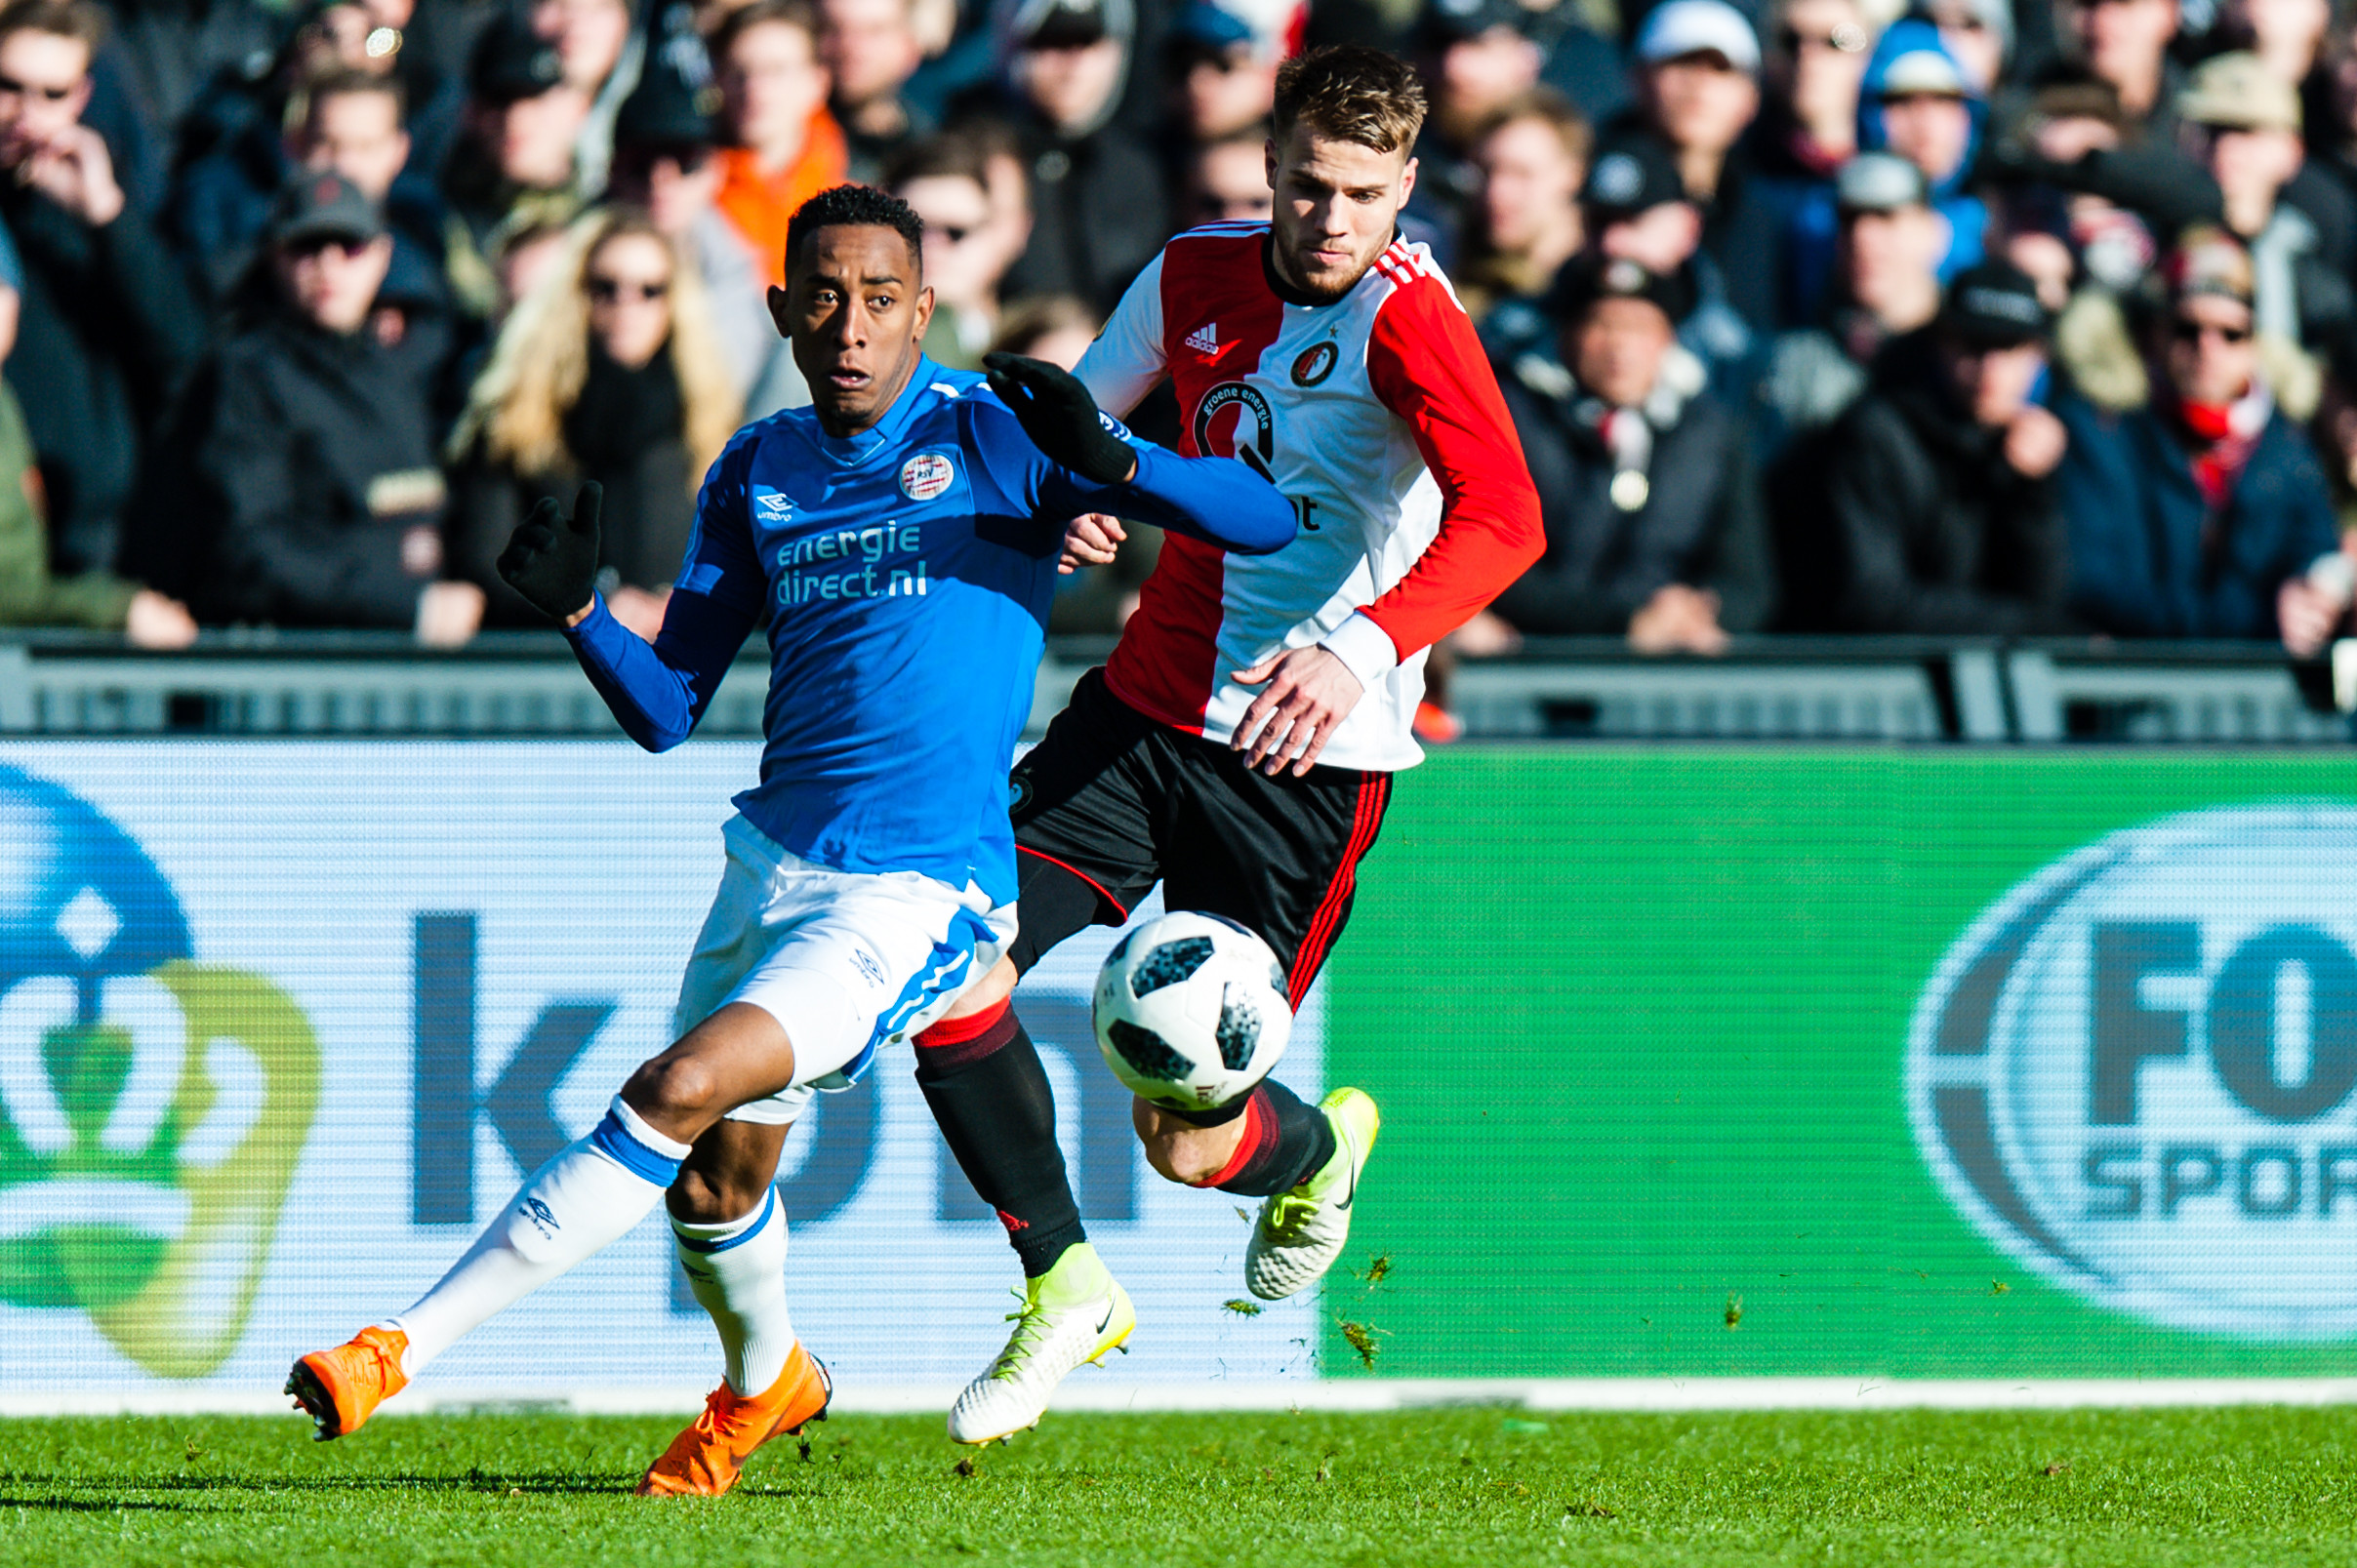 'Brenet nagenoeg akkoord met FC Twente'